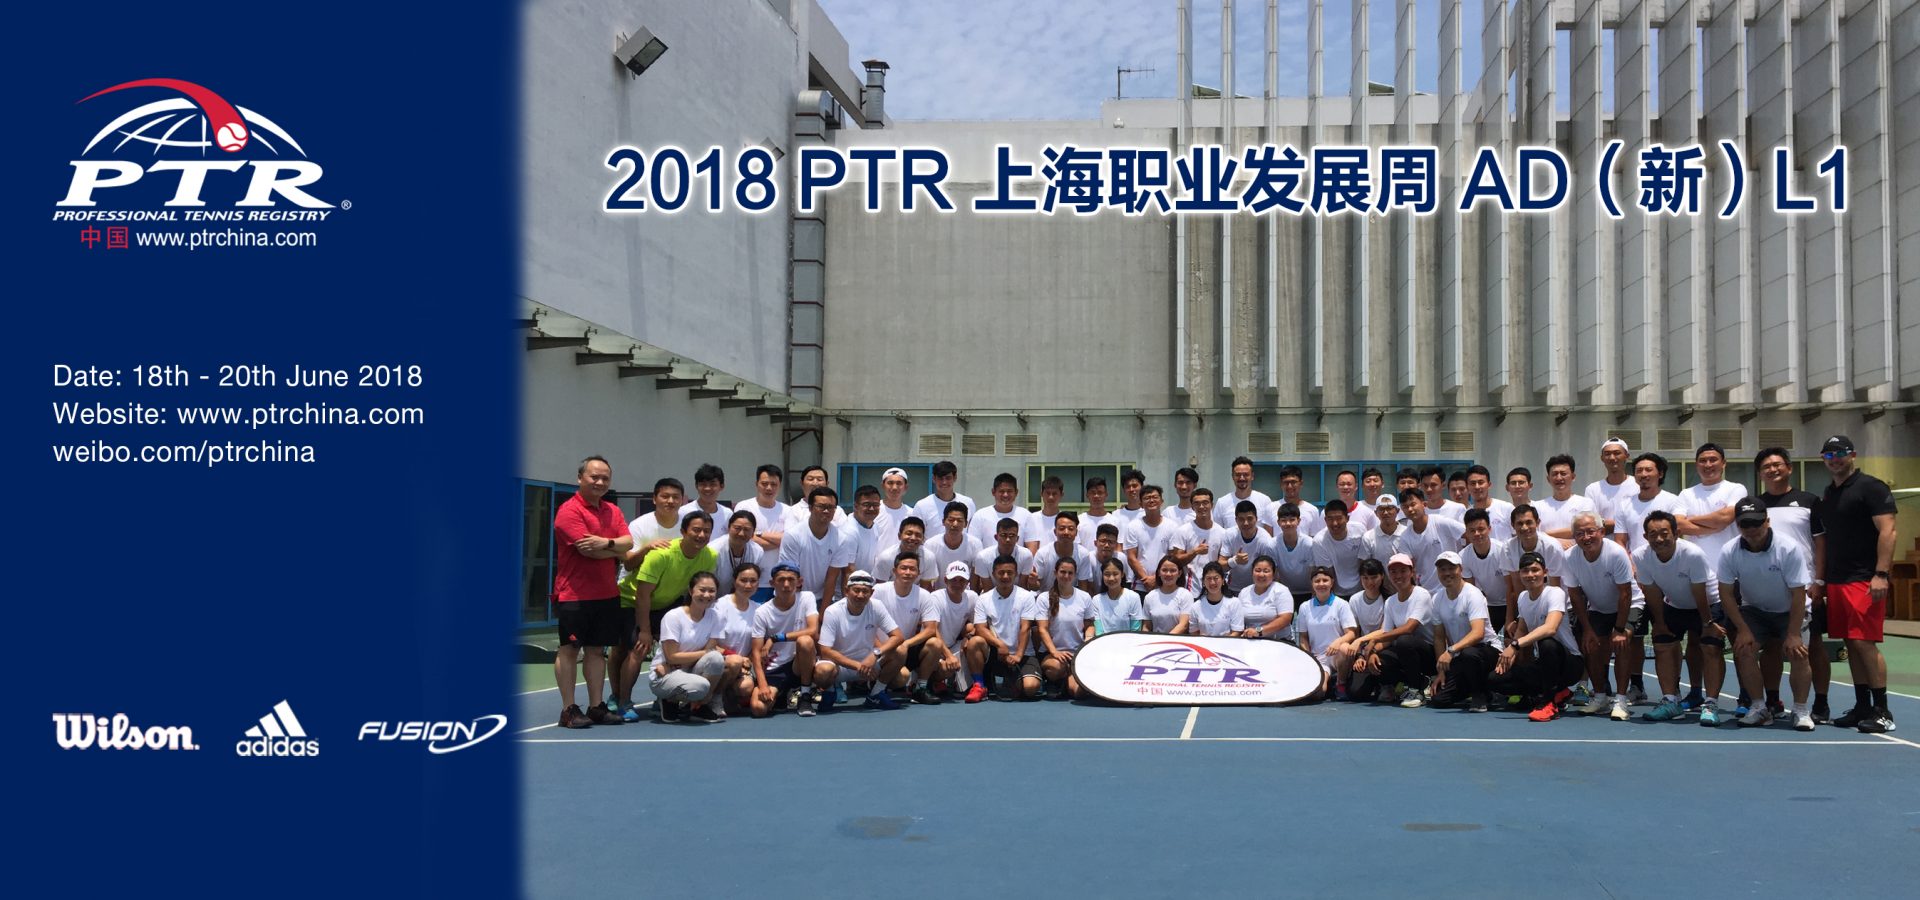 2018PTR上海职业发展周AD(新)L1圆满结束!